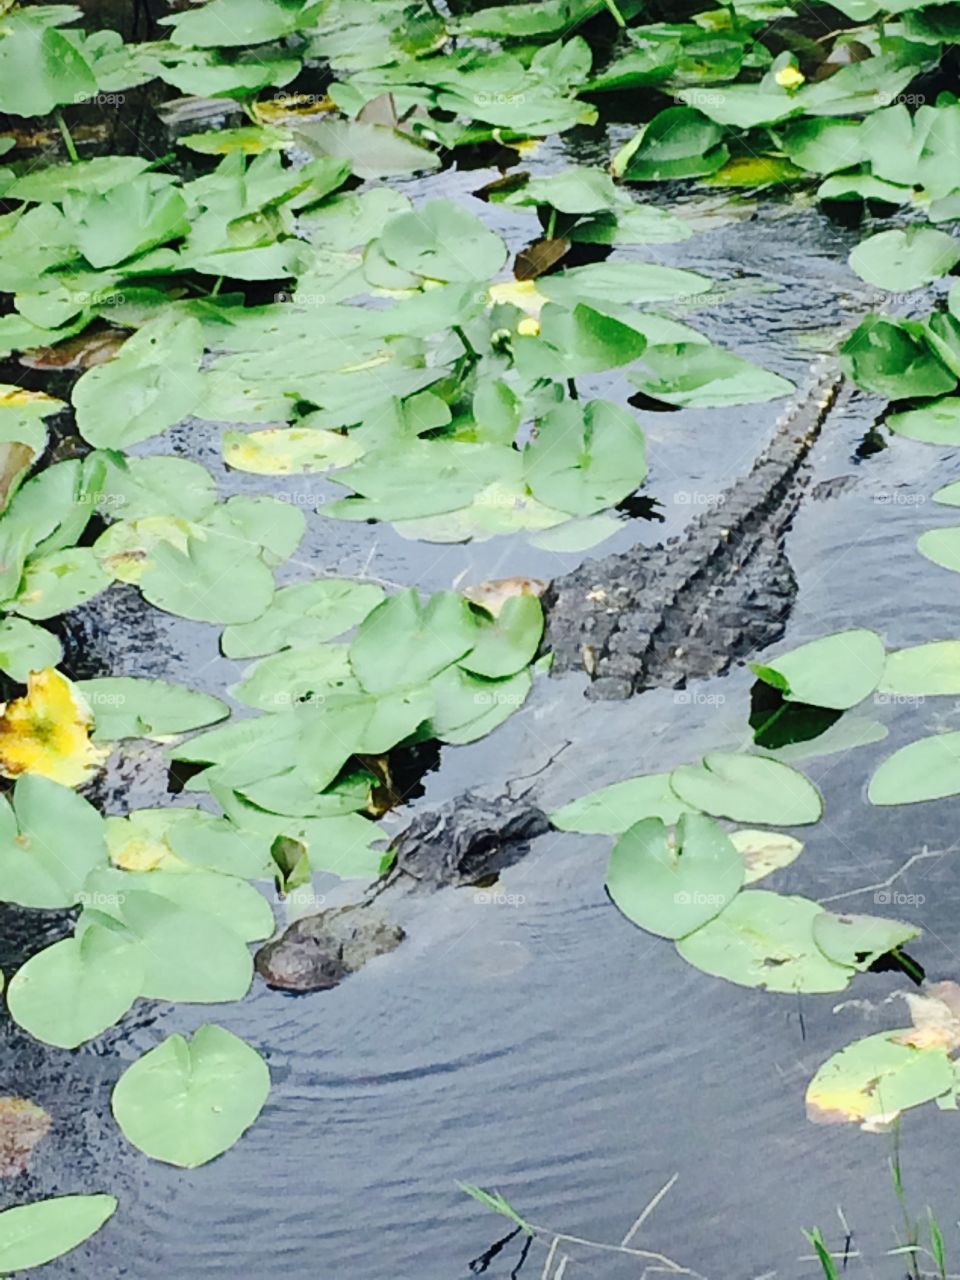 Sneaky. Taken in the Florida Everglades